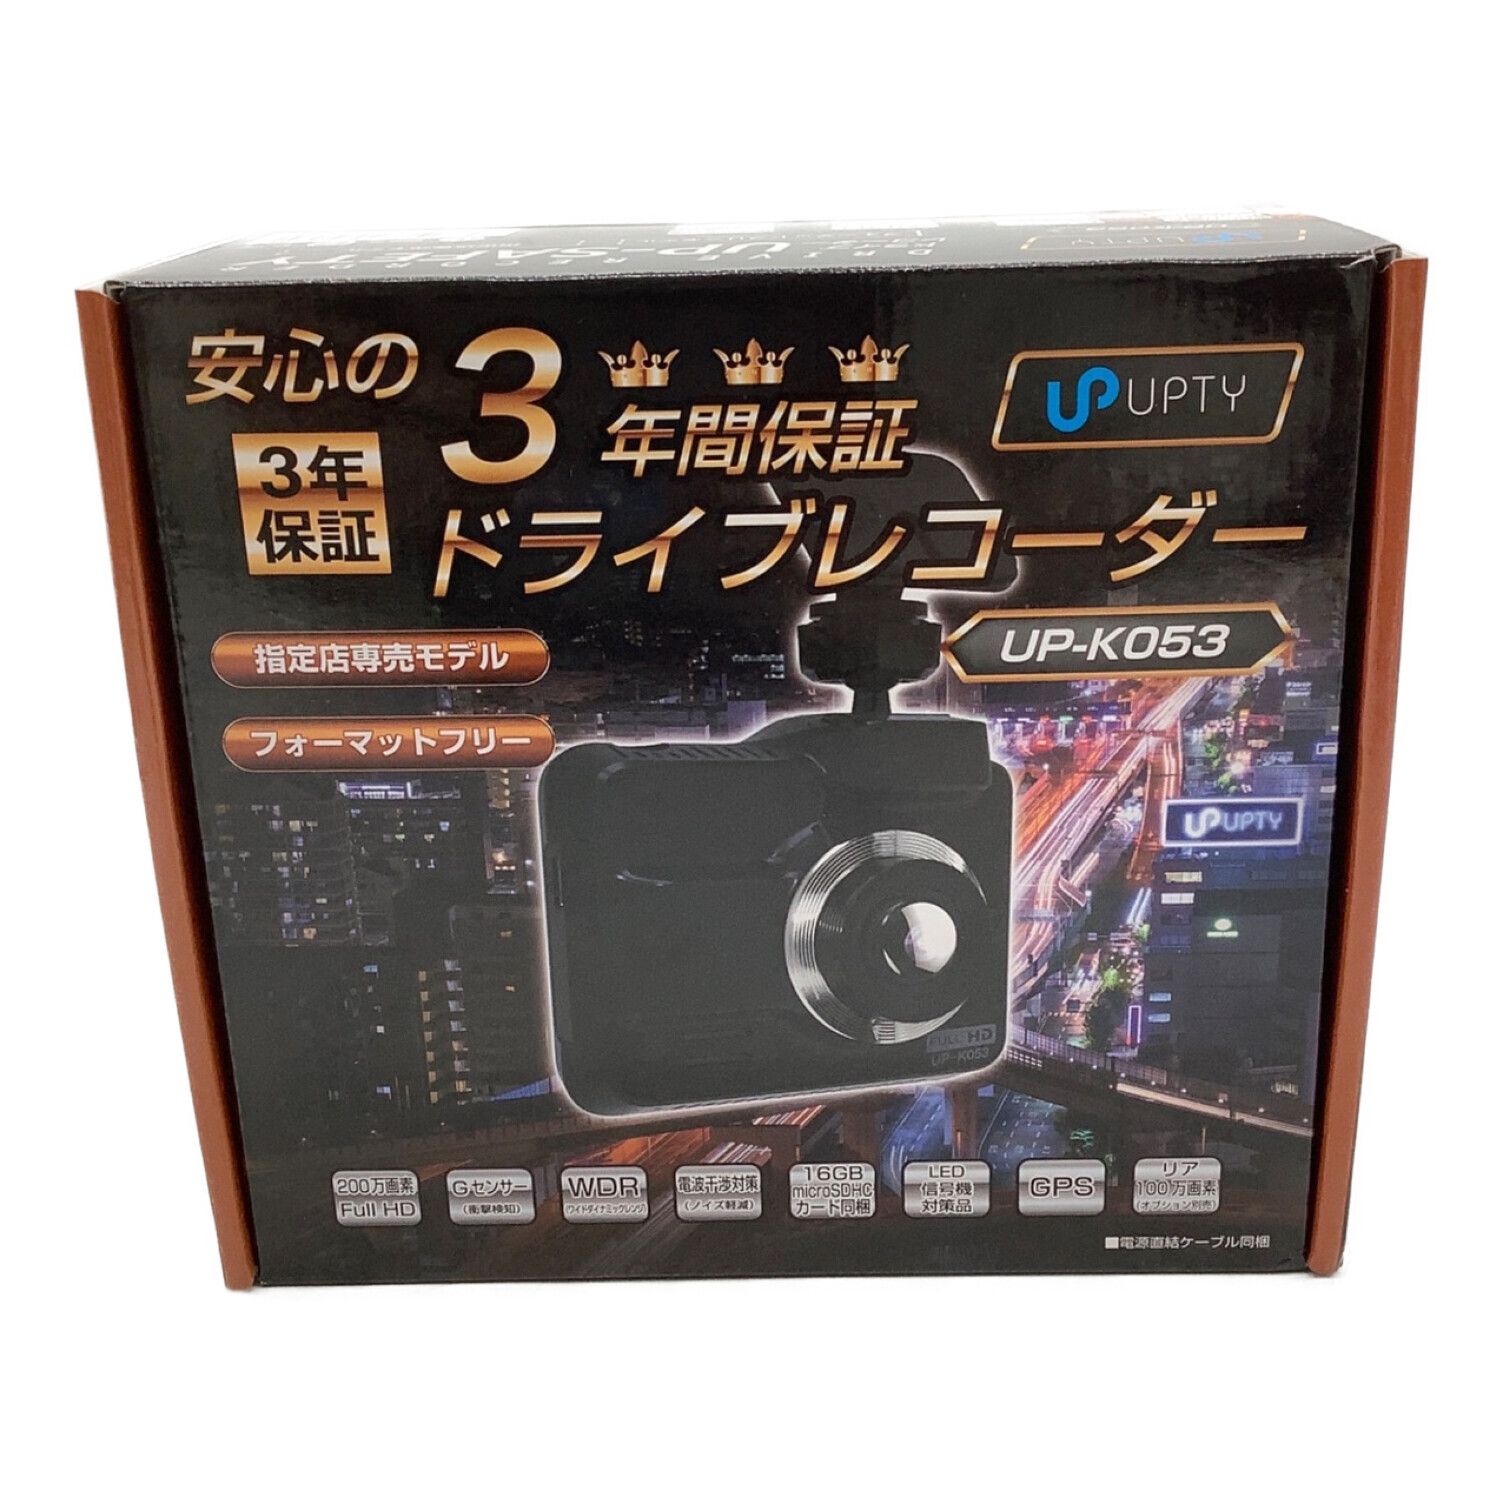 広角レンズ採用アプティ UPTY 指定専売店モデル ドライブレコーダー UP-K053